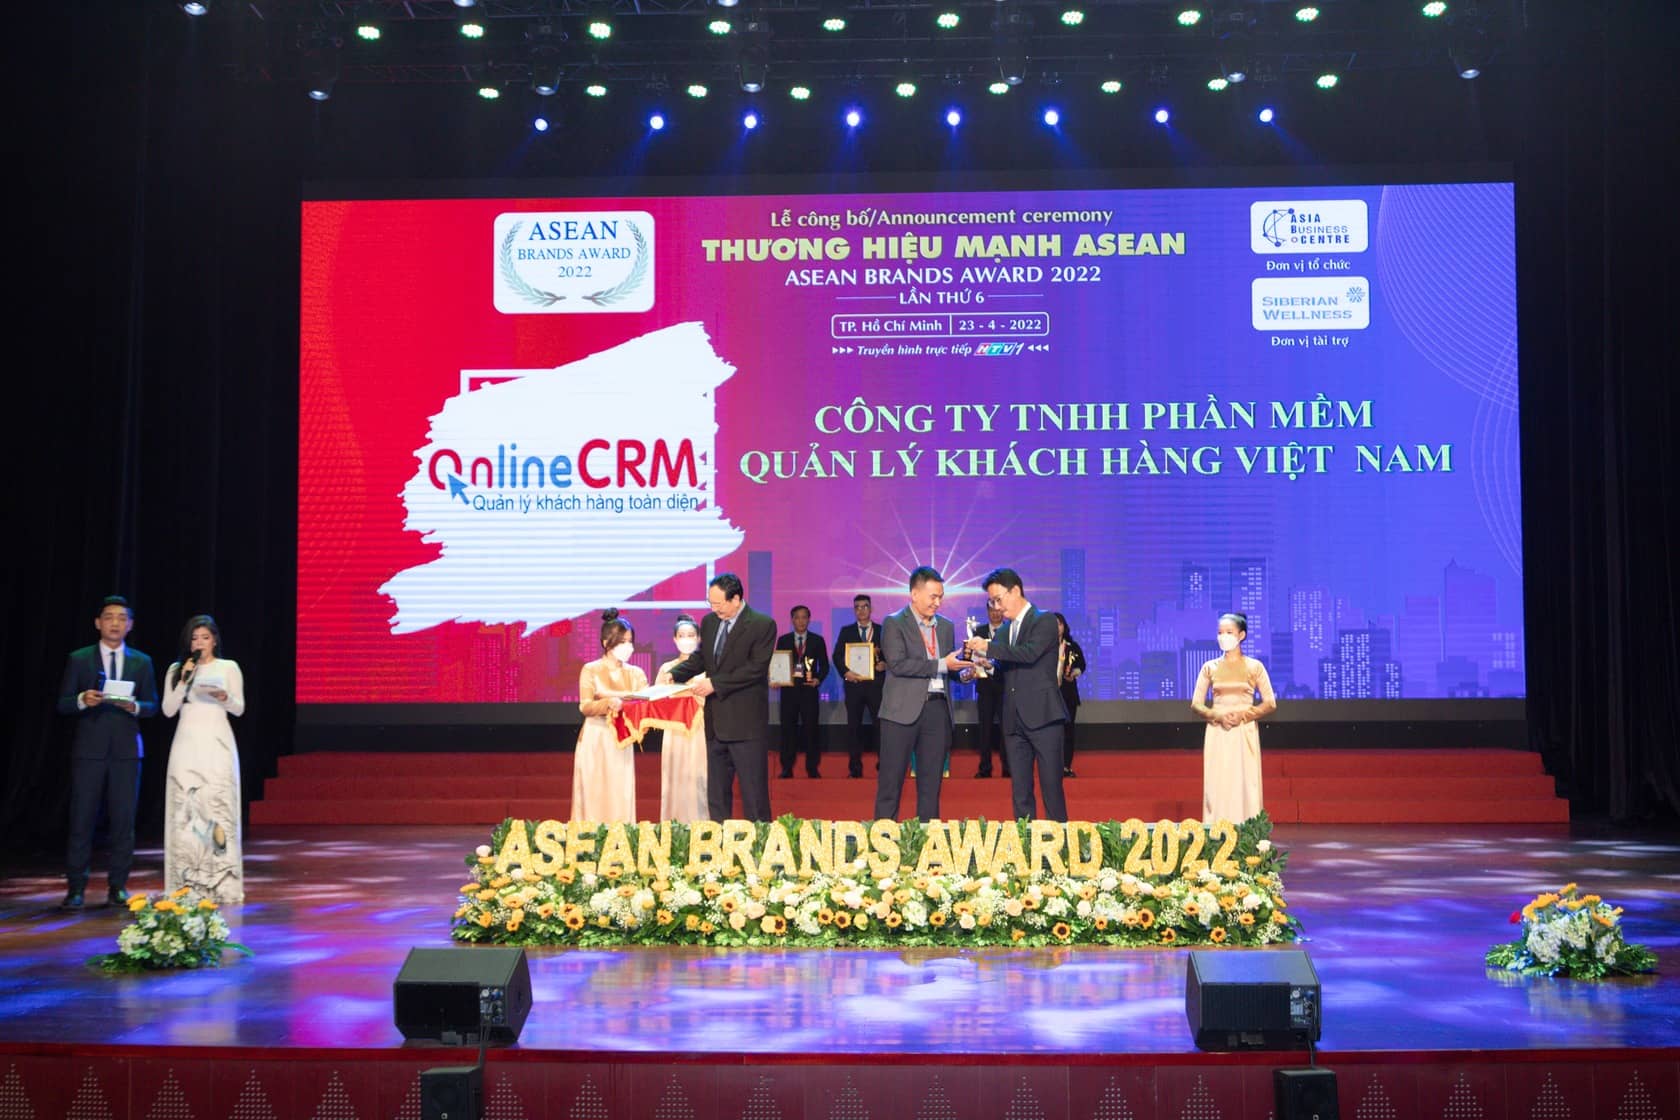 CloudGO nhận giải thưởng TOP 10 thương hiệu mạnh ASEAN 2022